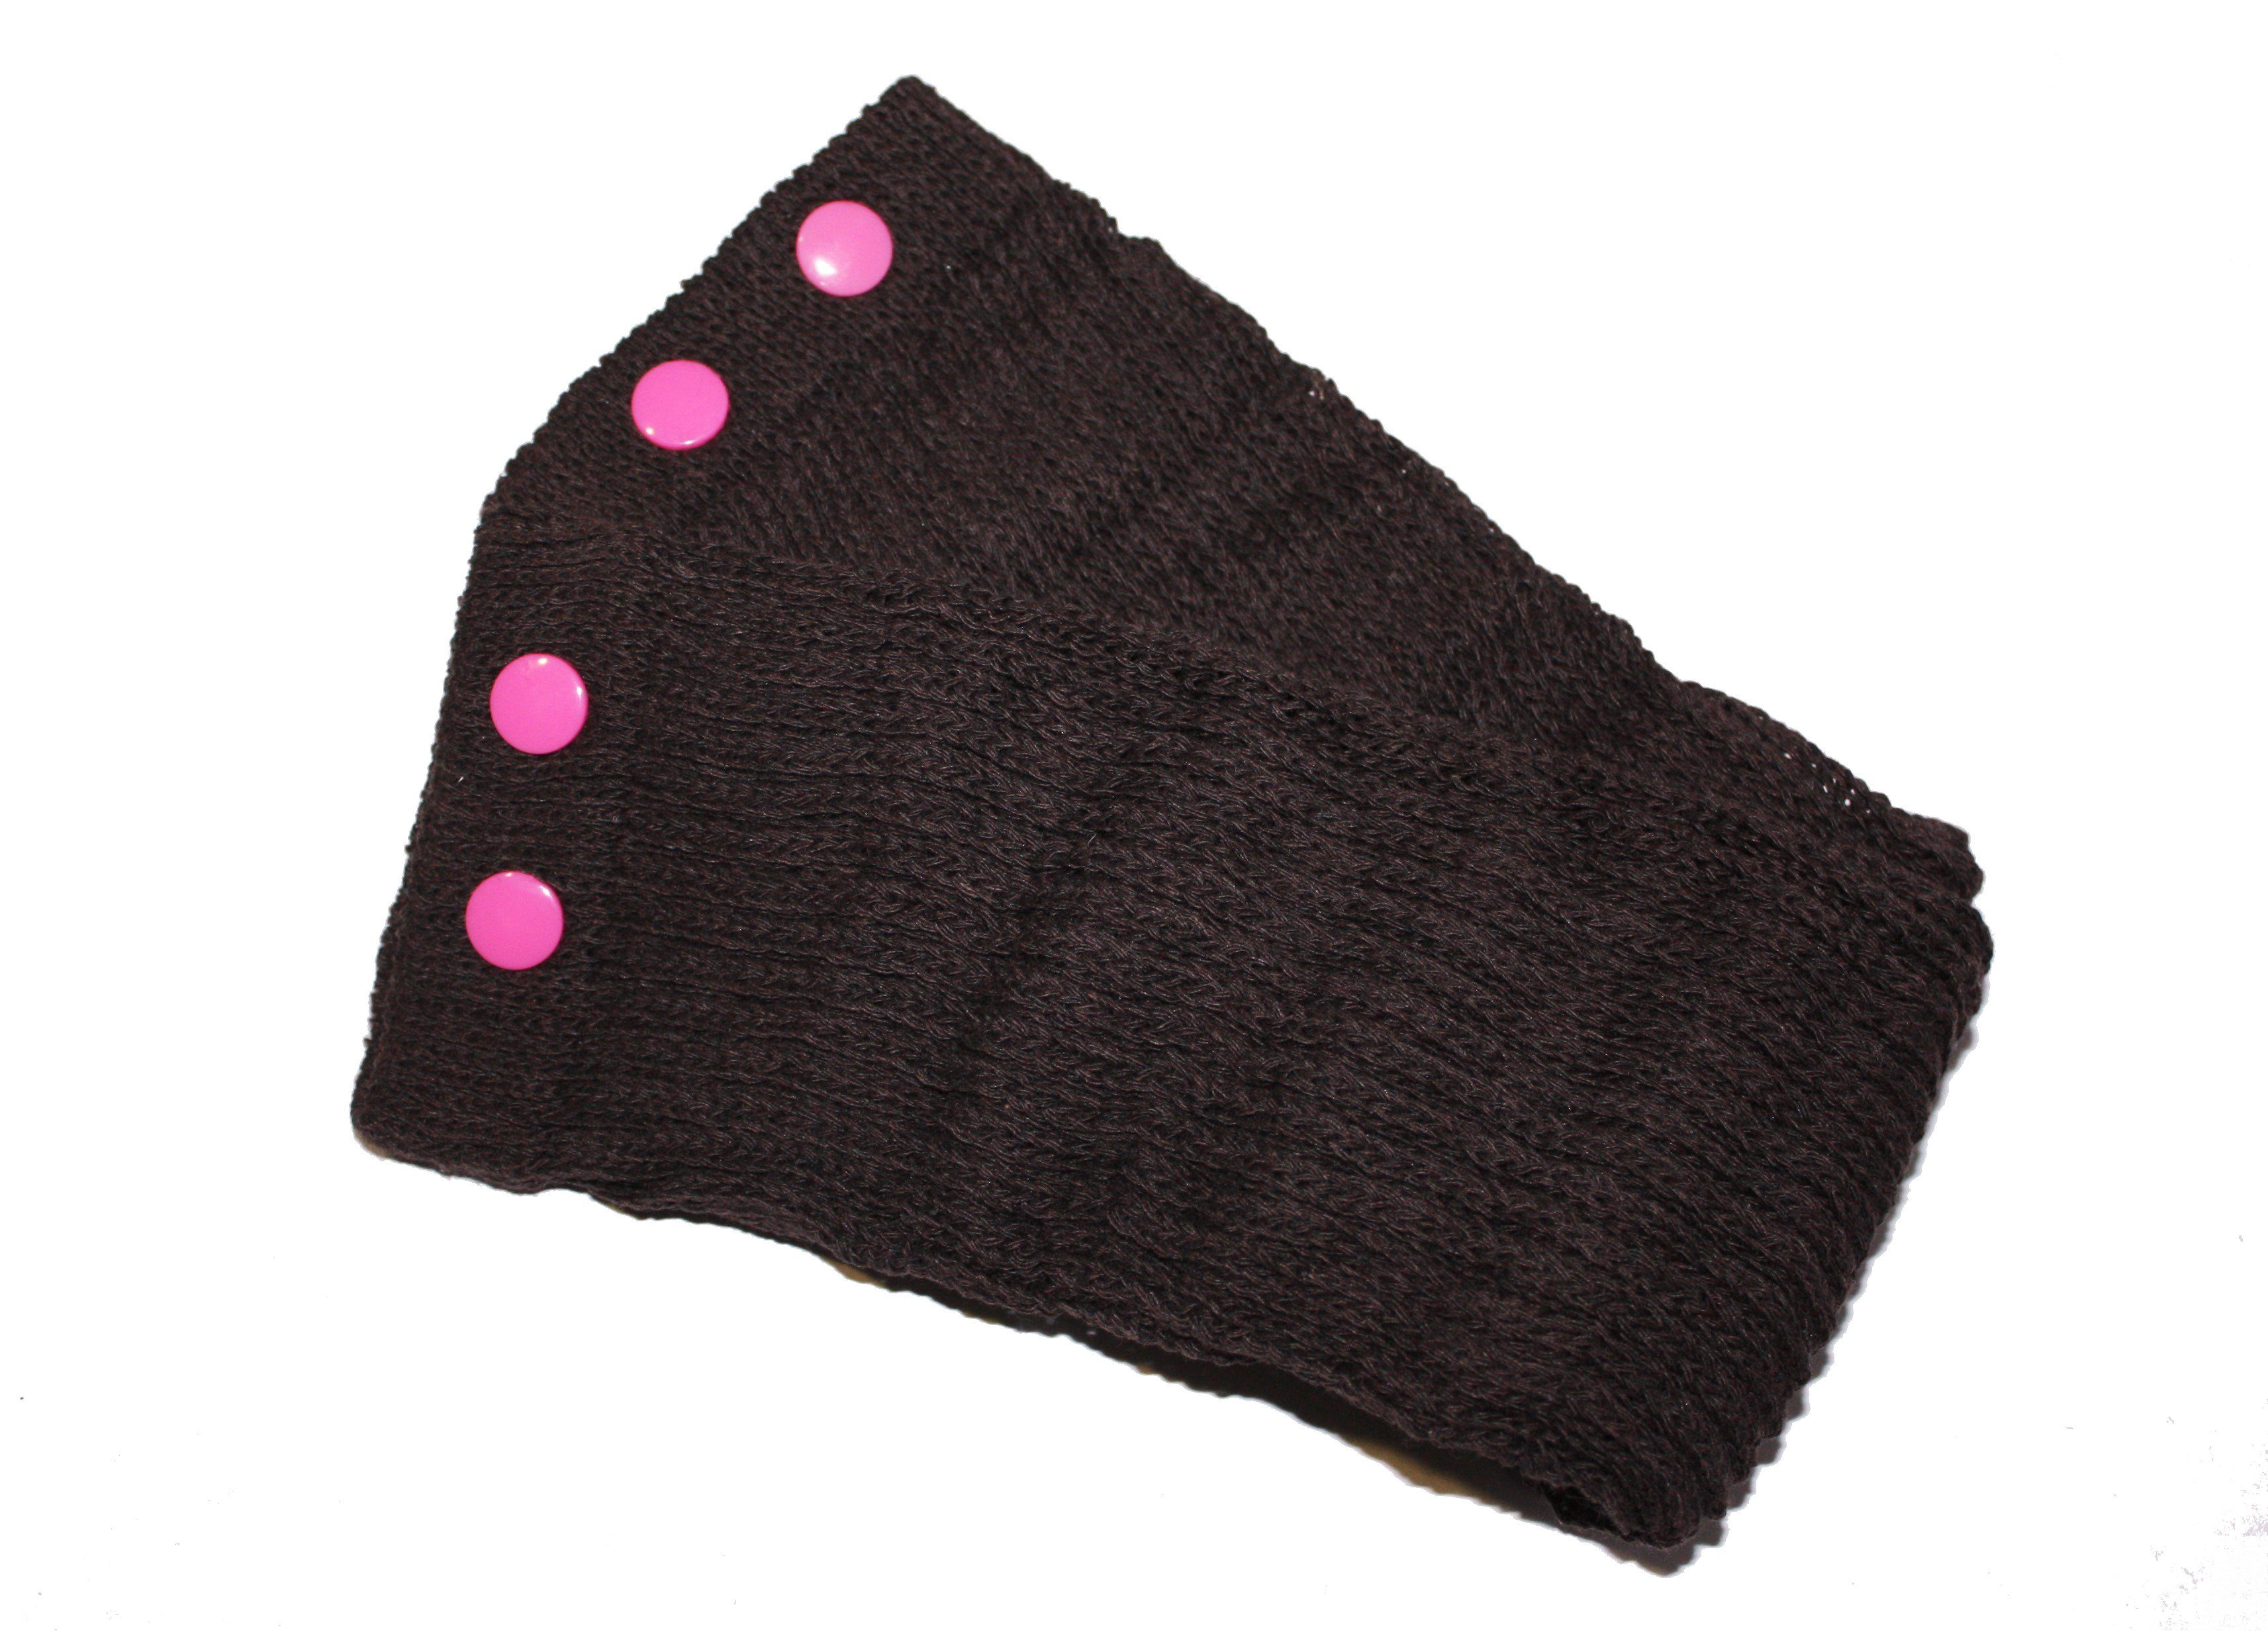 dunkle design Beinstulpen Braun mit Bunt Pink Nieten